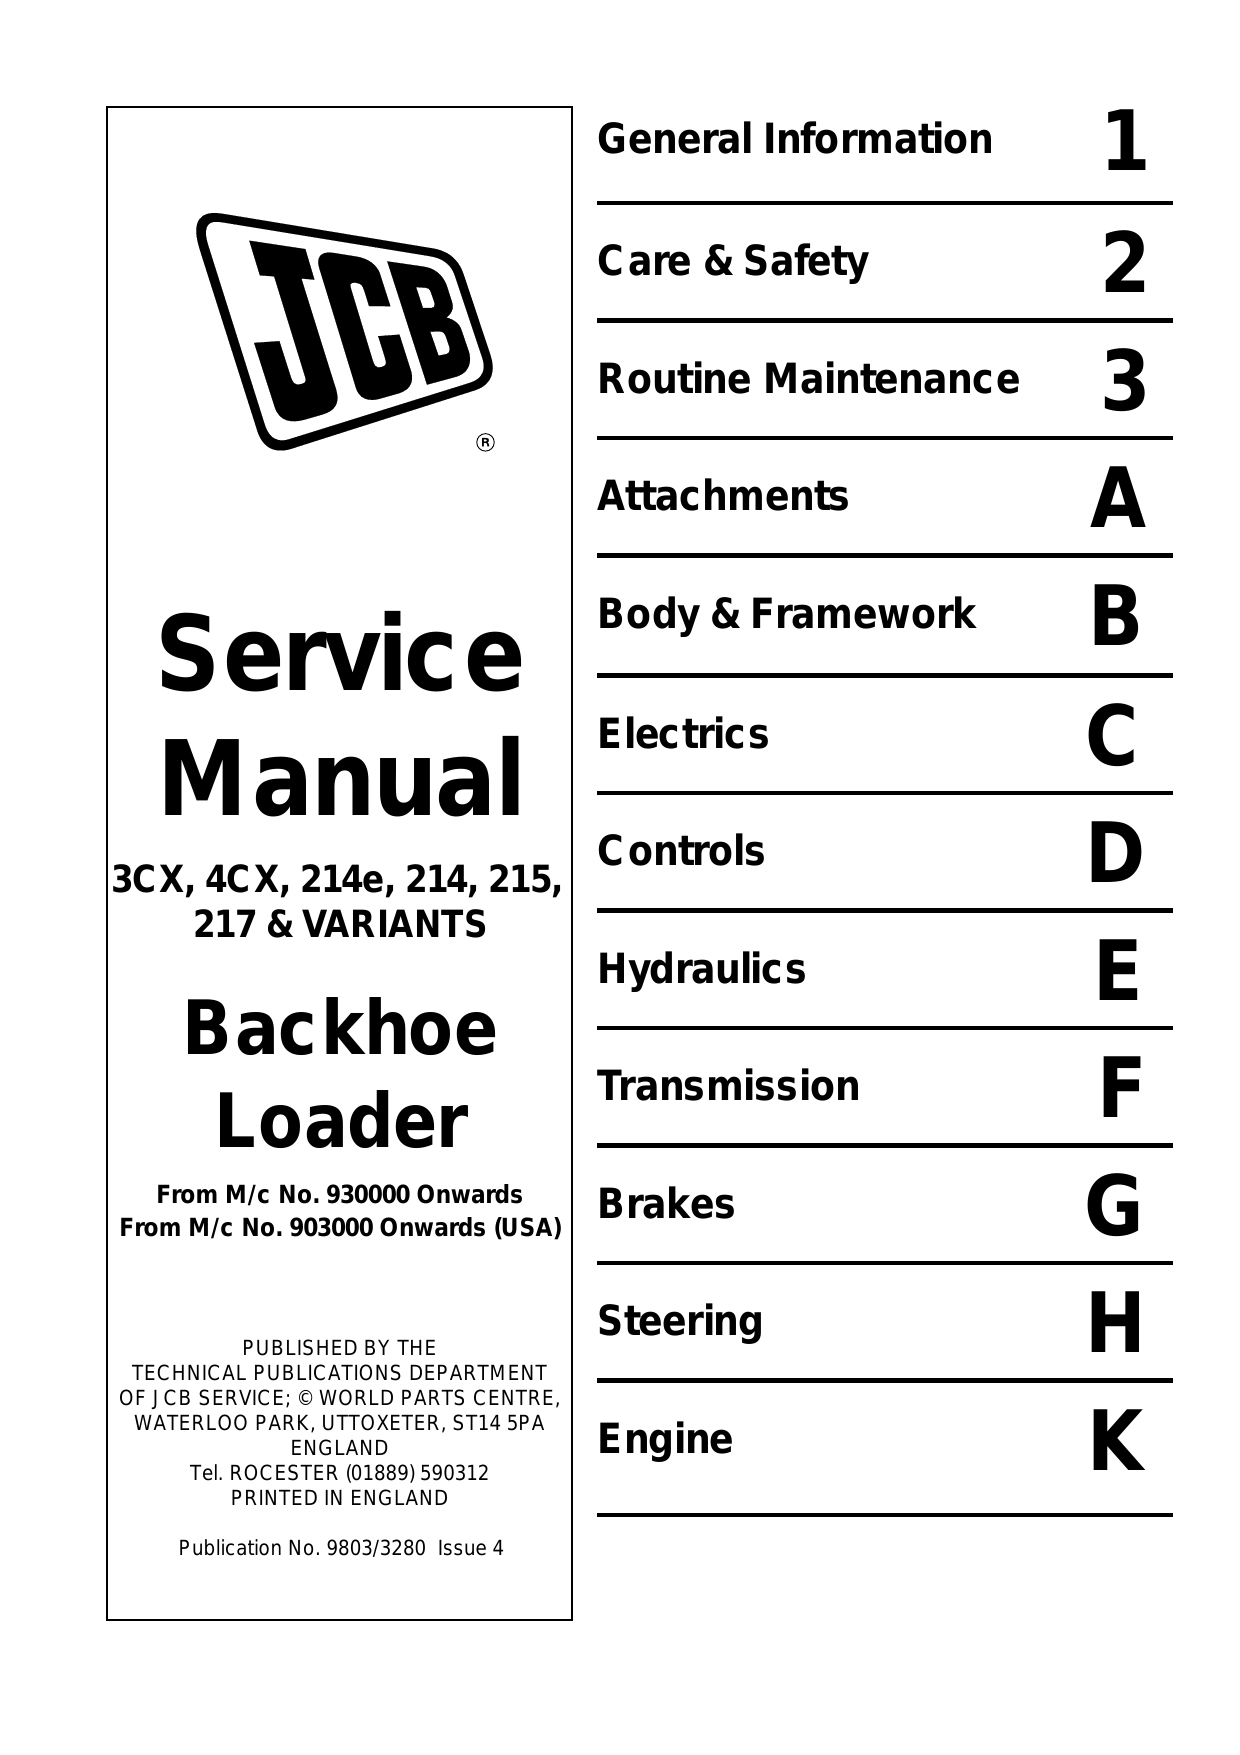 JCB 3CX, 4CX 4cx 214, 215, 217 backhoe loader service manual Preview image 1